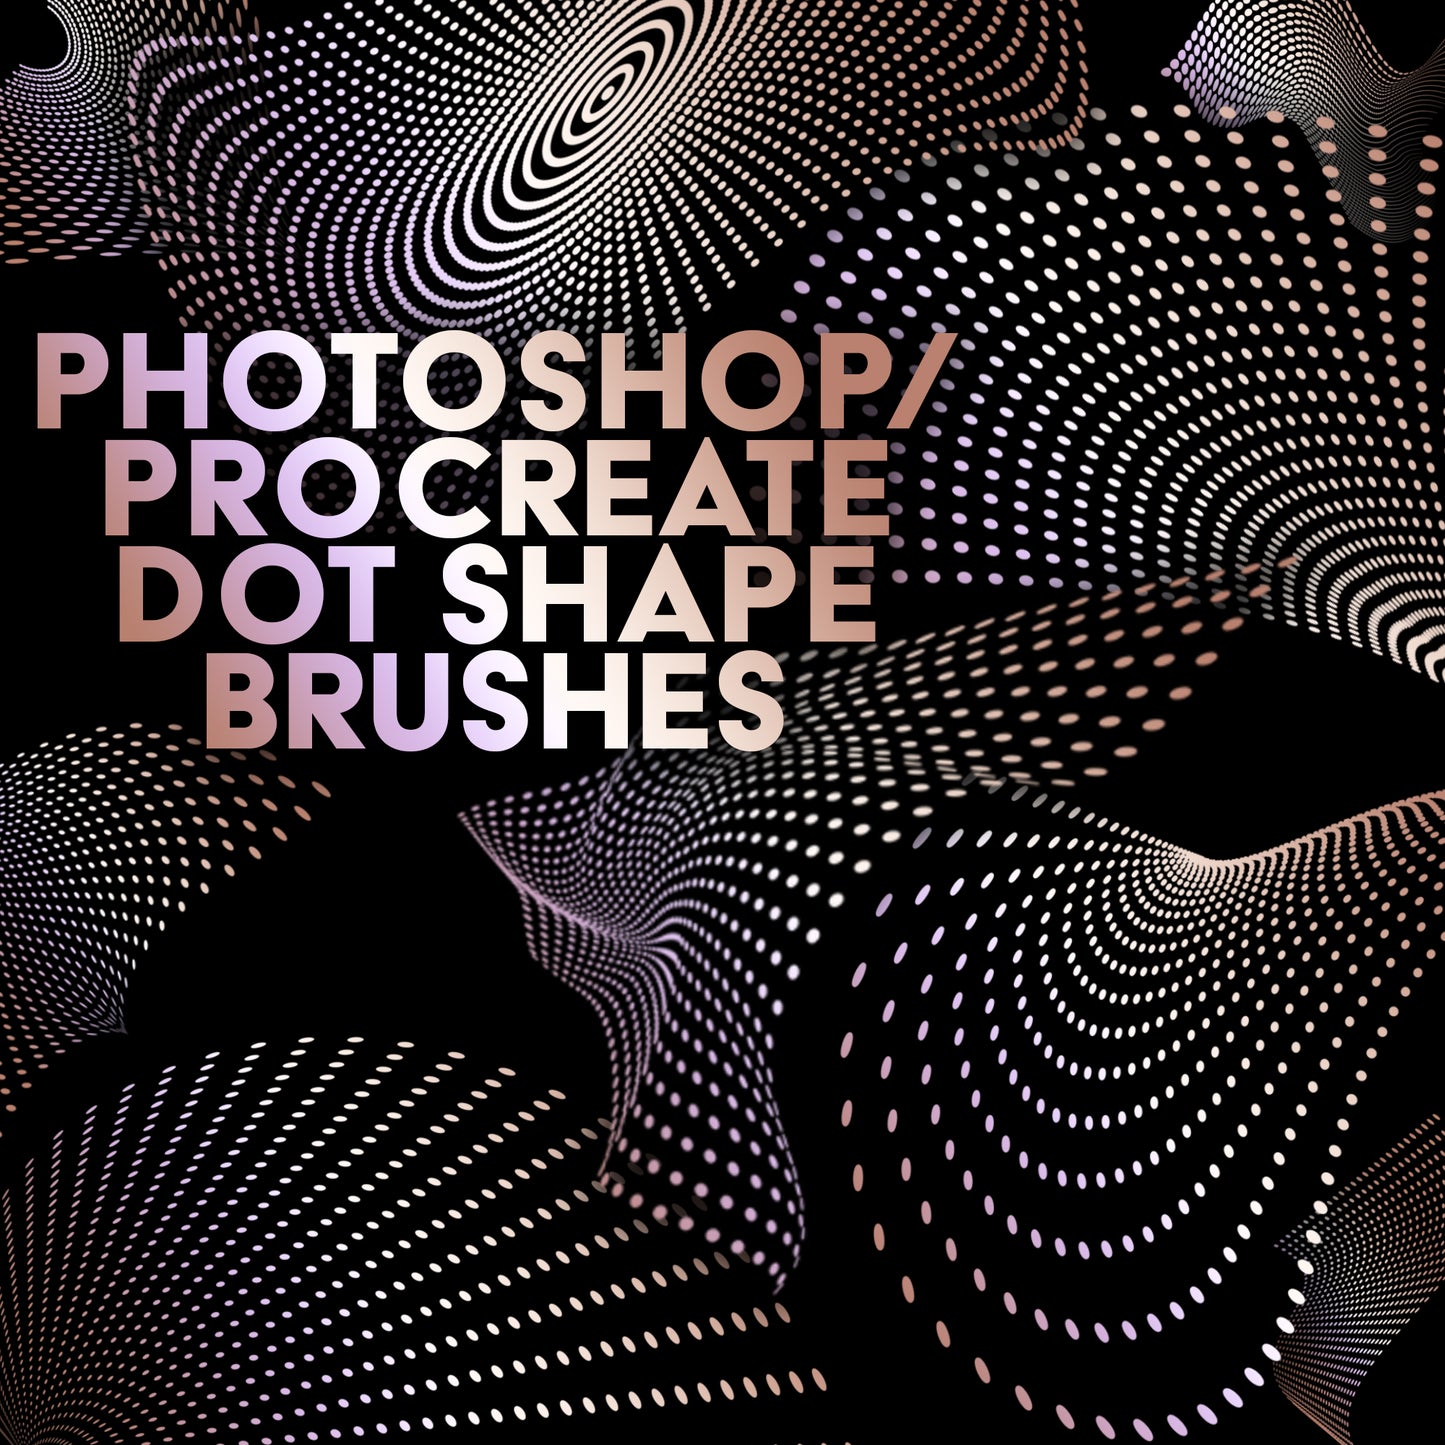 Photoshop / Procreate Dot Shape Brushes